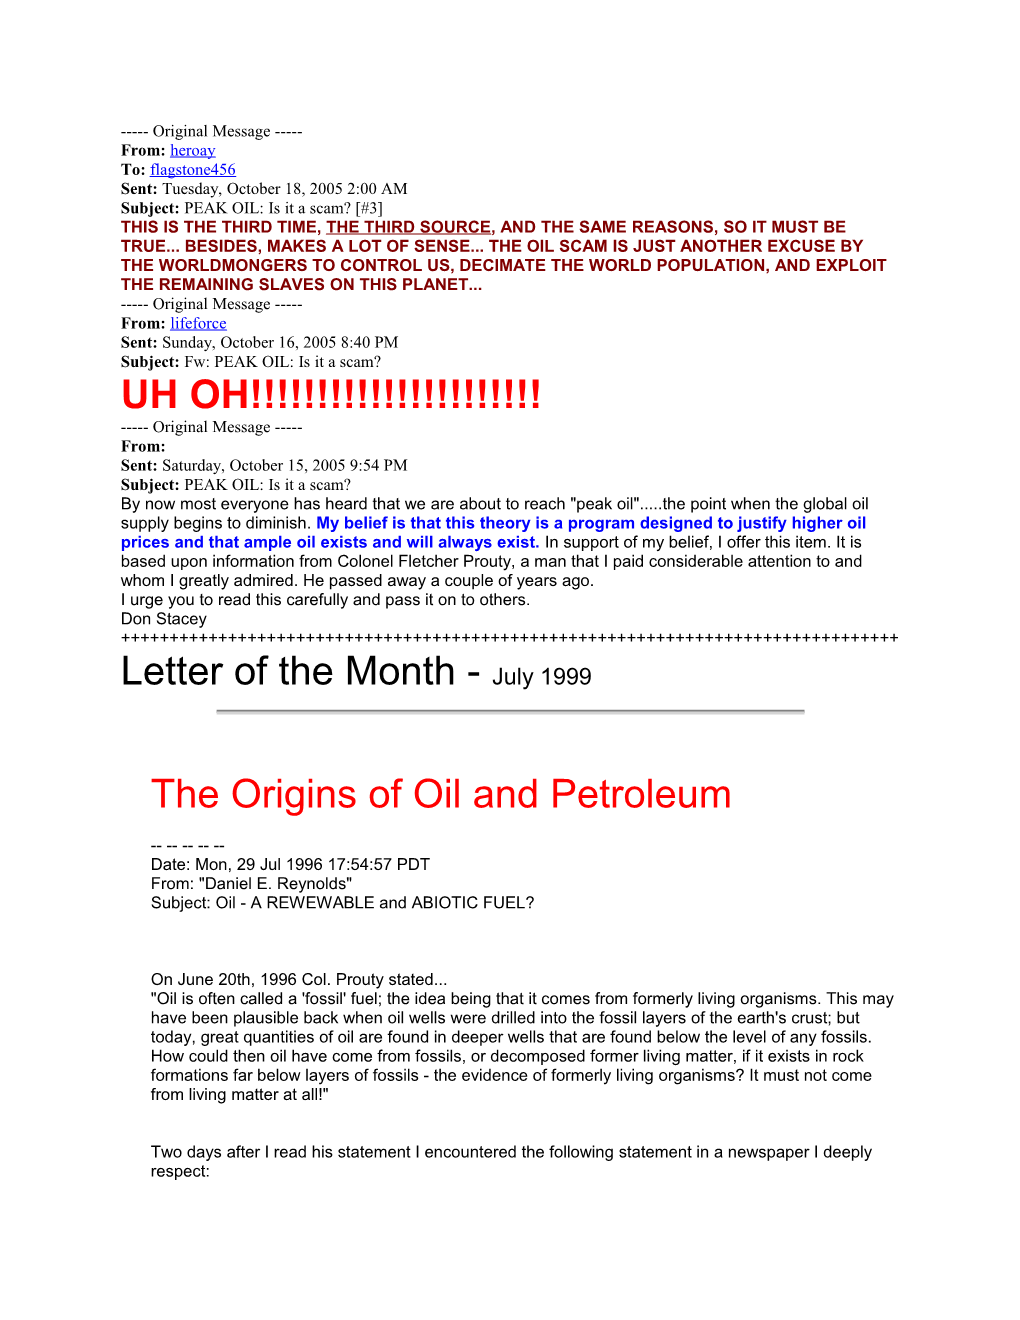 Subject: PEAK OIL: Is It a Scam? #3